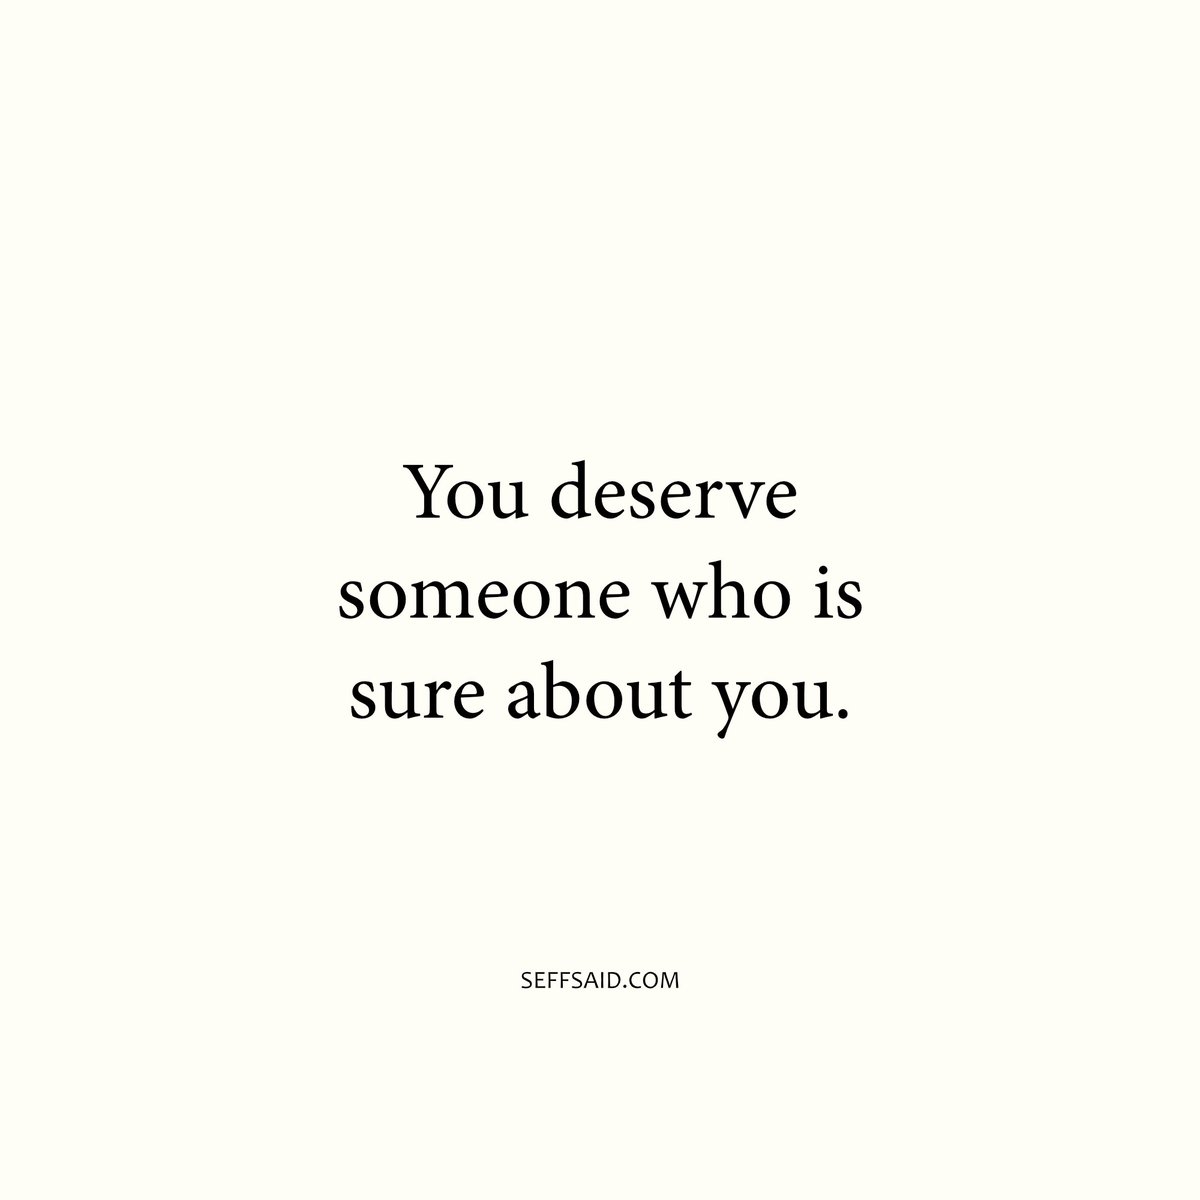 You deserve it